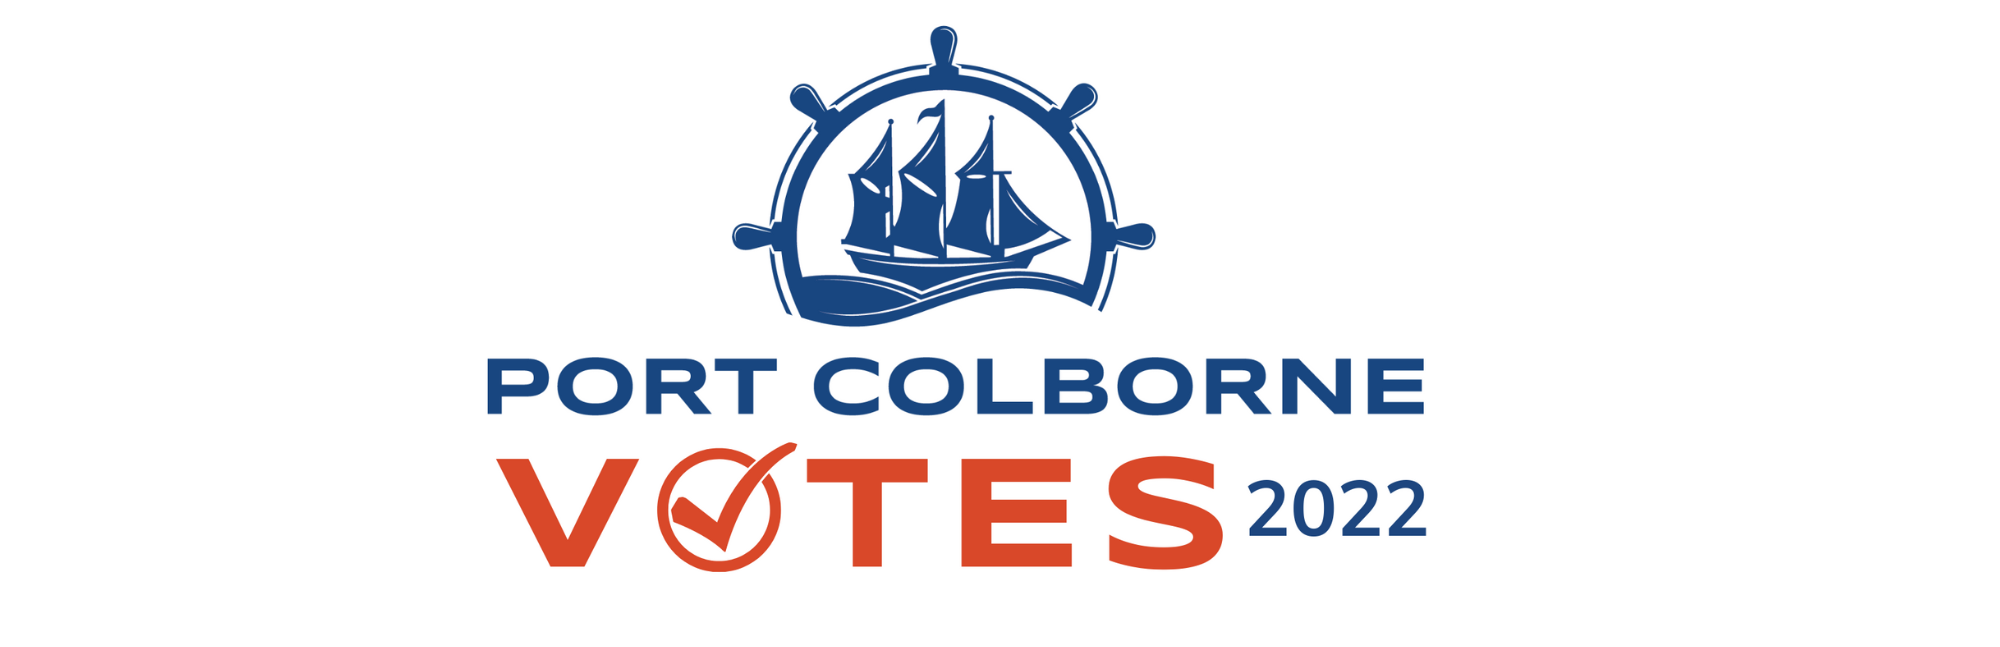 Port Colborne Votes logo